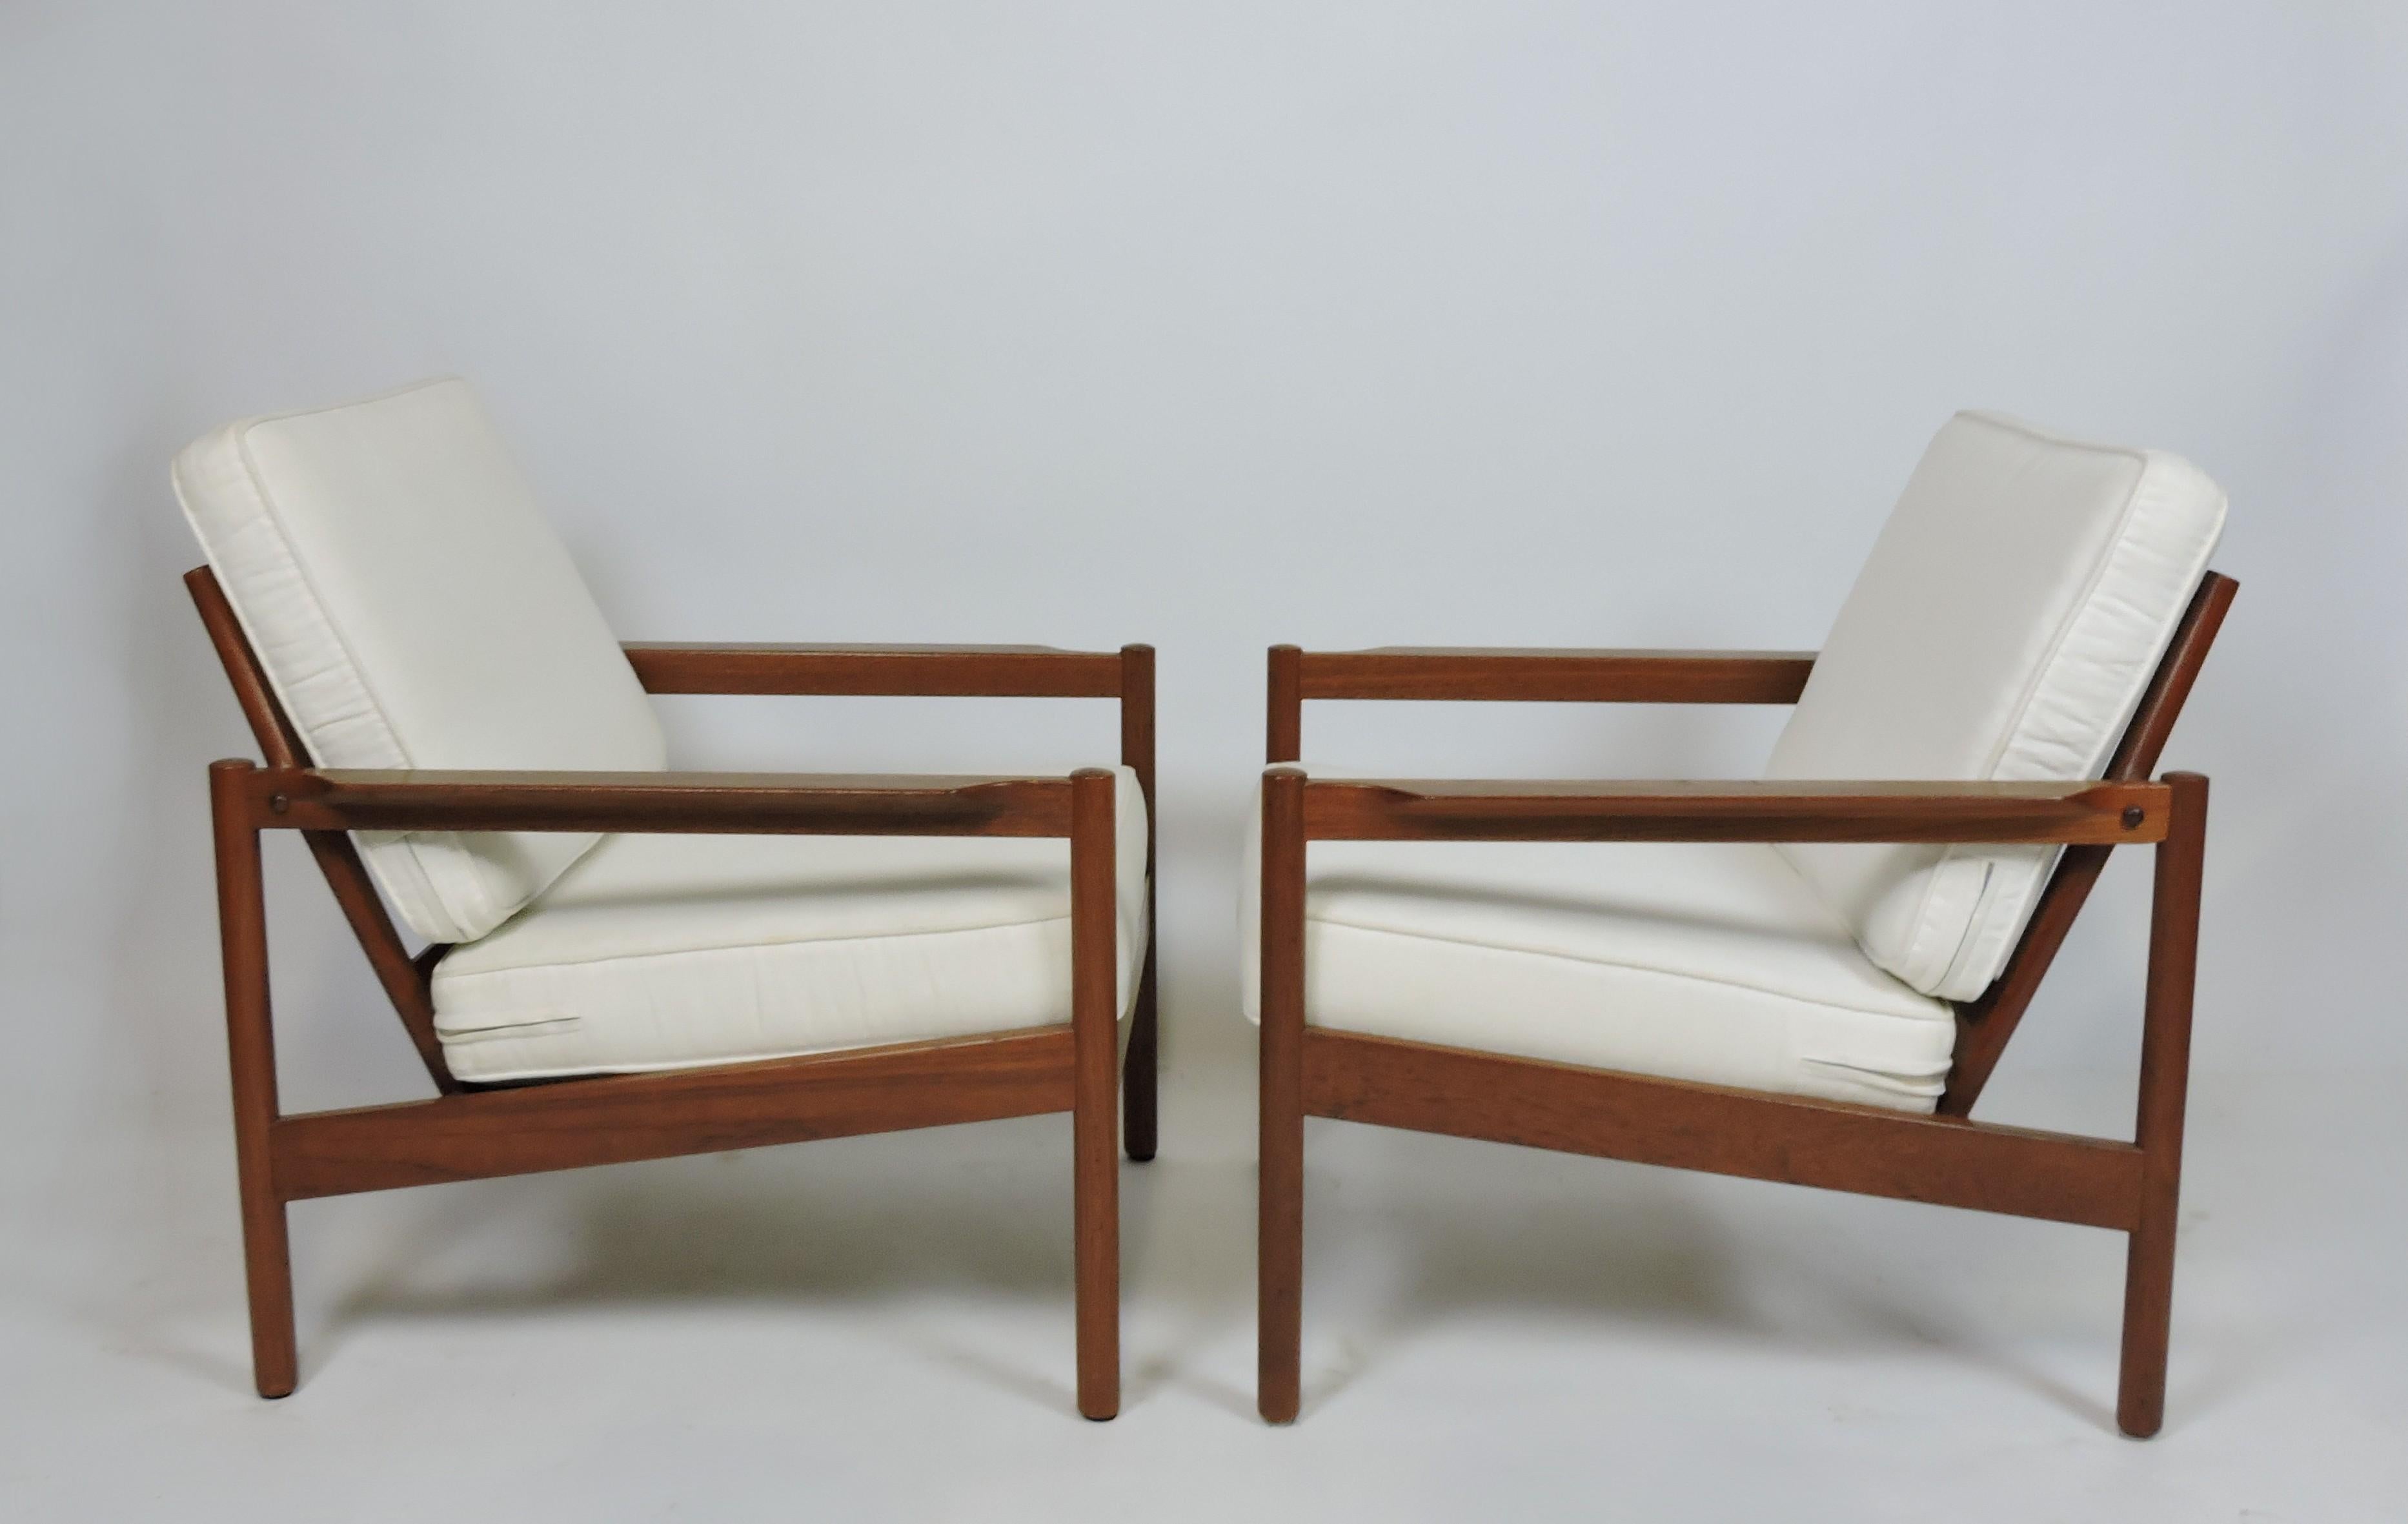 Hübsches Paar offener Loungesessel, Modell KK161, entworfen von Kai Kristiansen und hergestellt in Dänemark vom hochwertigen Möbelhersteller Magnus Olesen. Diese sehr bequemen Stühle bestehen aus massivem Teakholz mit zwei losen Kissen, die mit